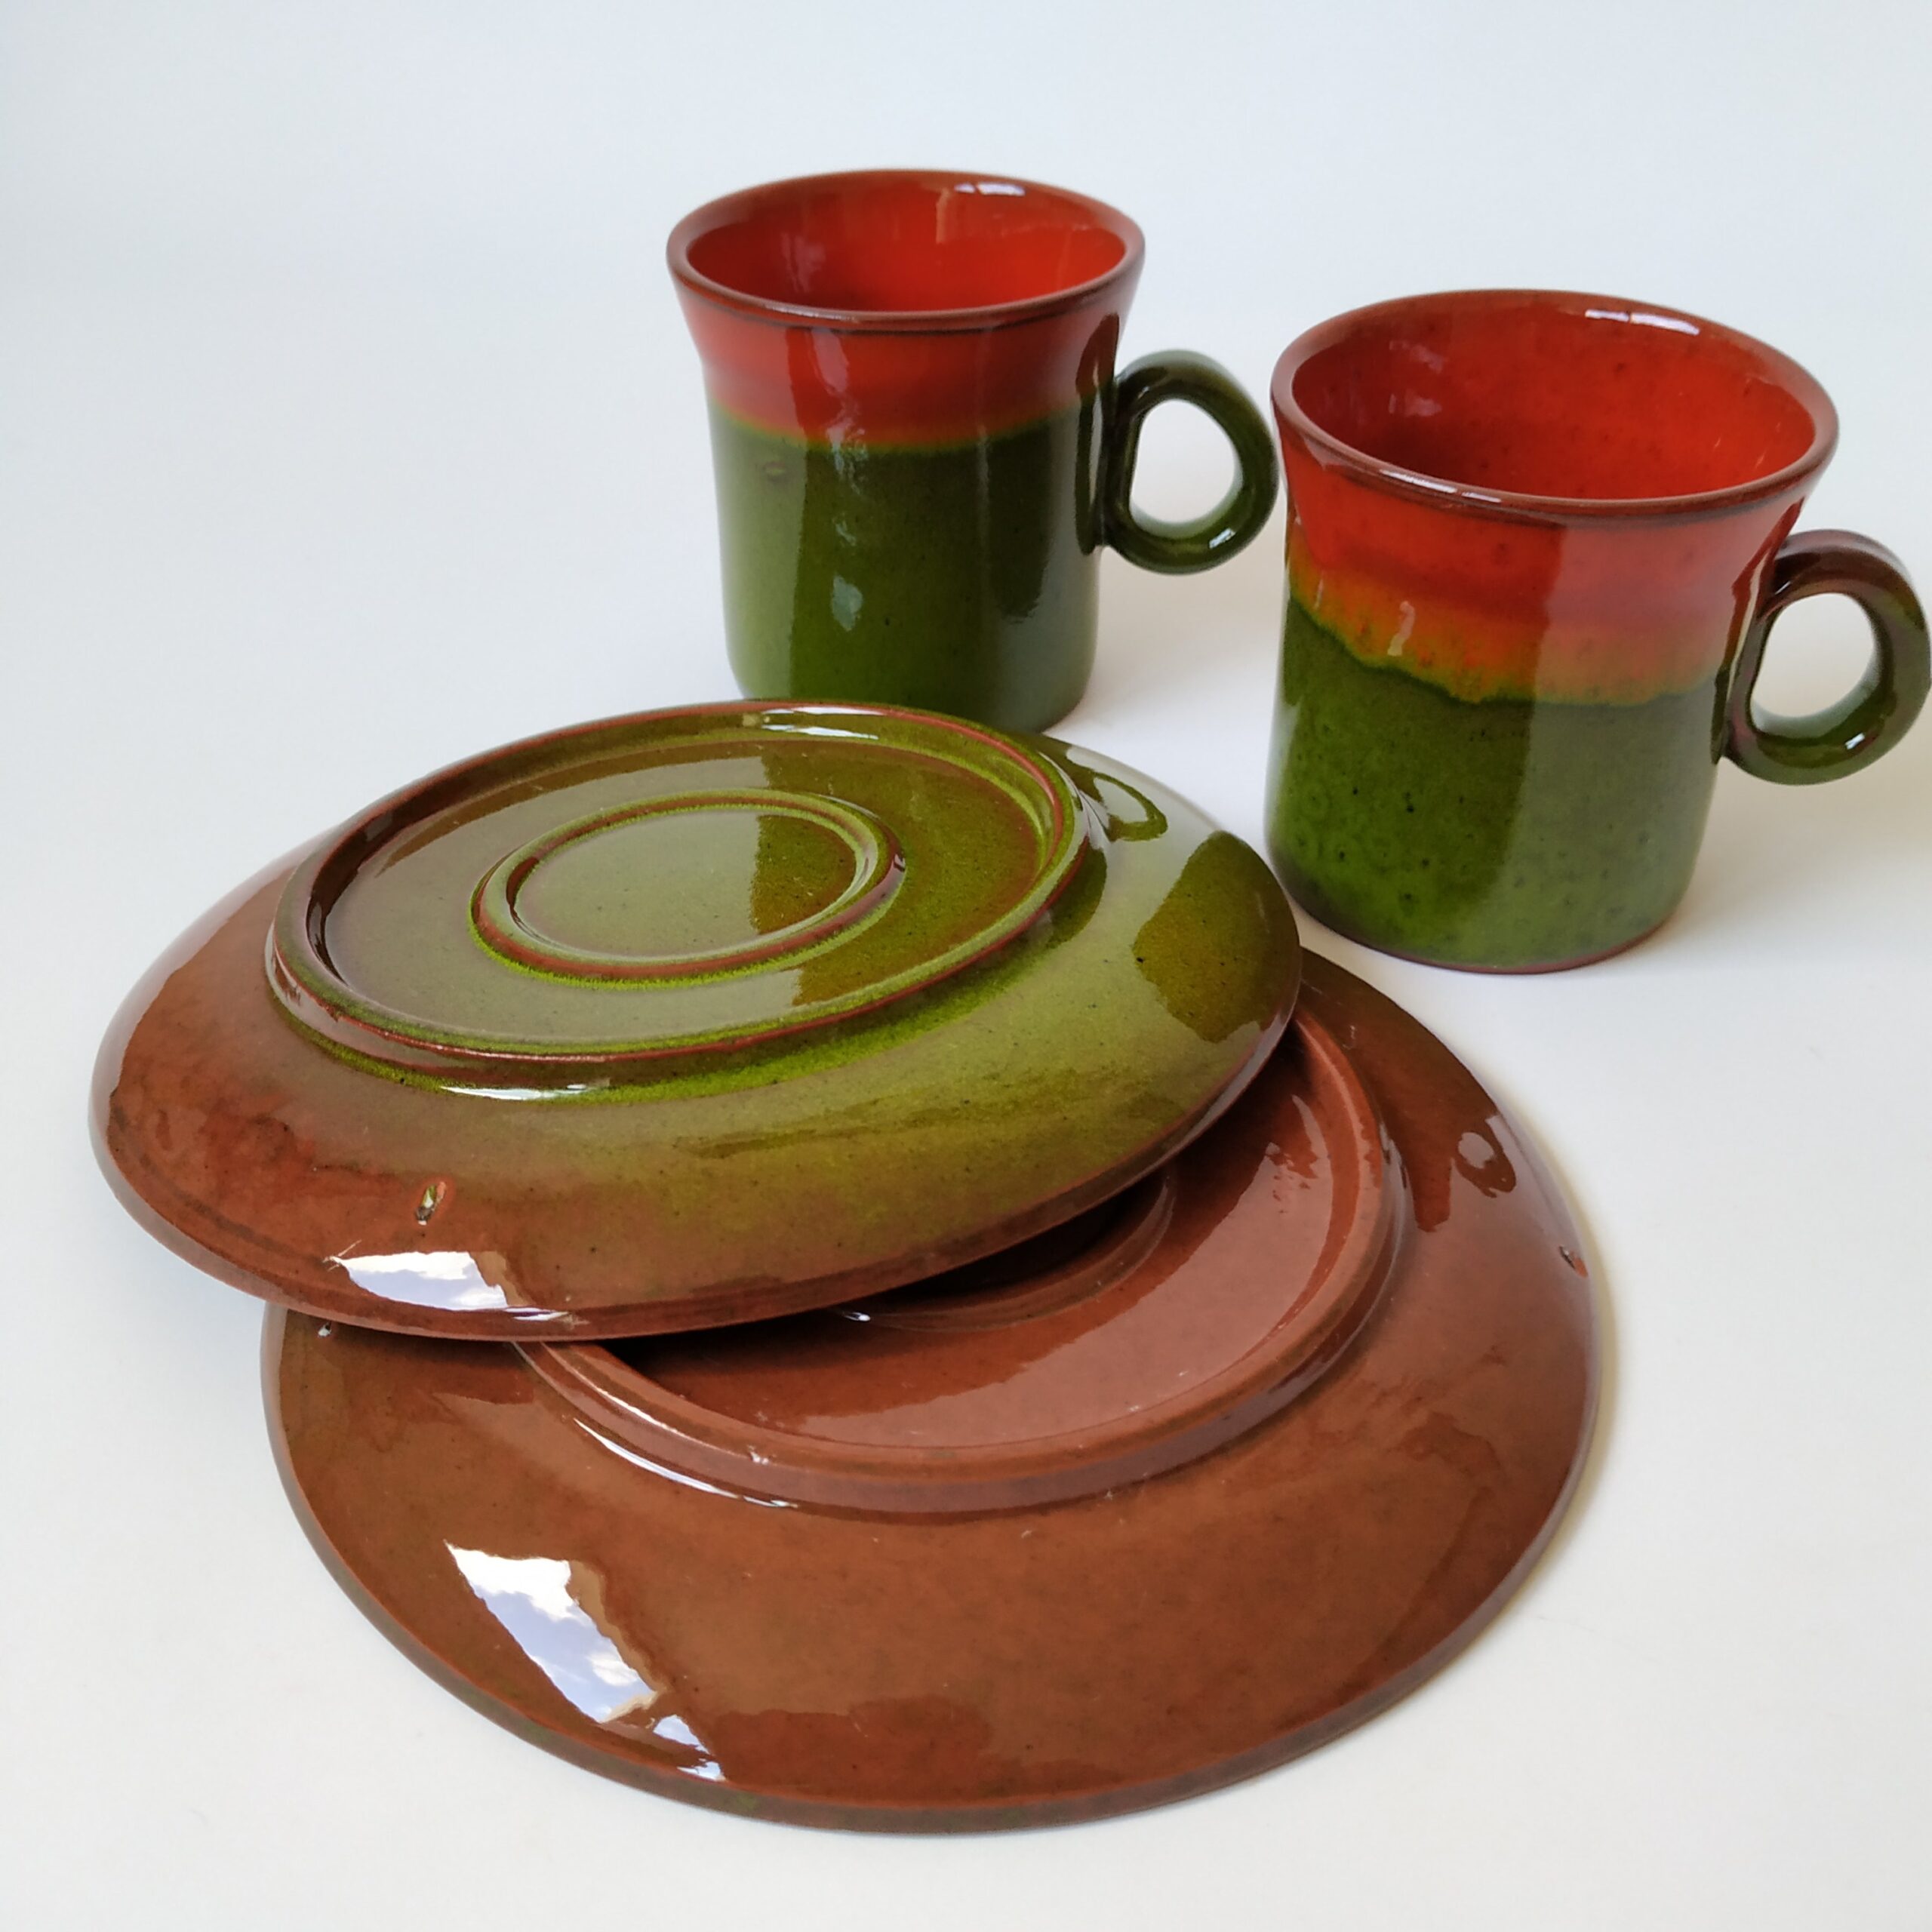 Espressokopjes met schotel – kleur rood-oranje-groen met een inhoud van 100 ml – 2 stuks (3)